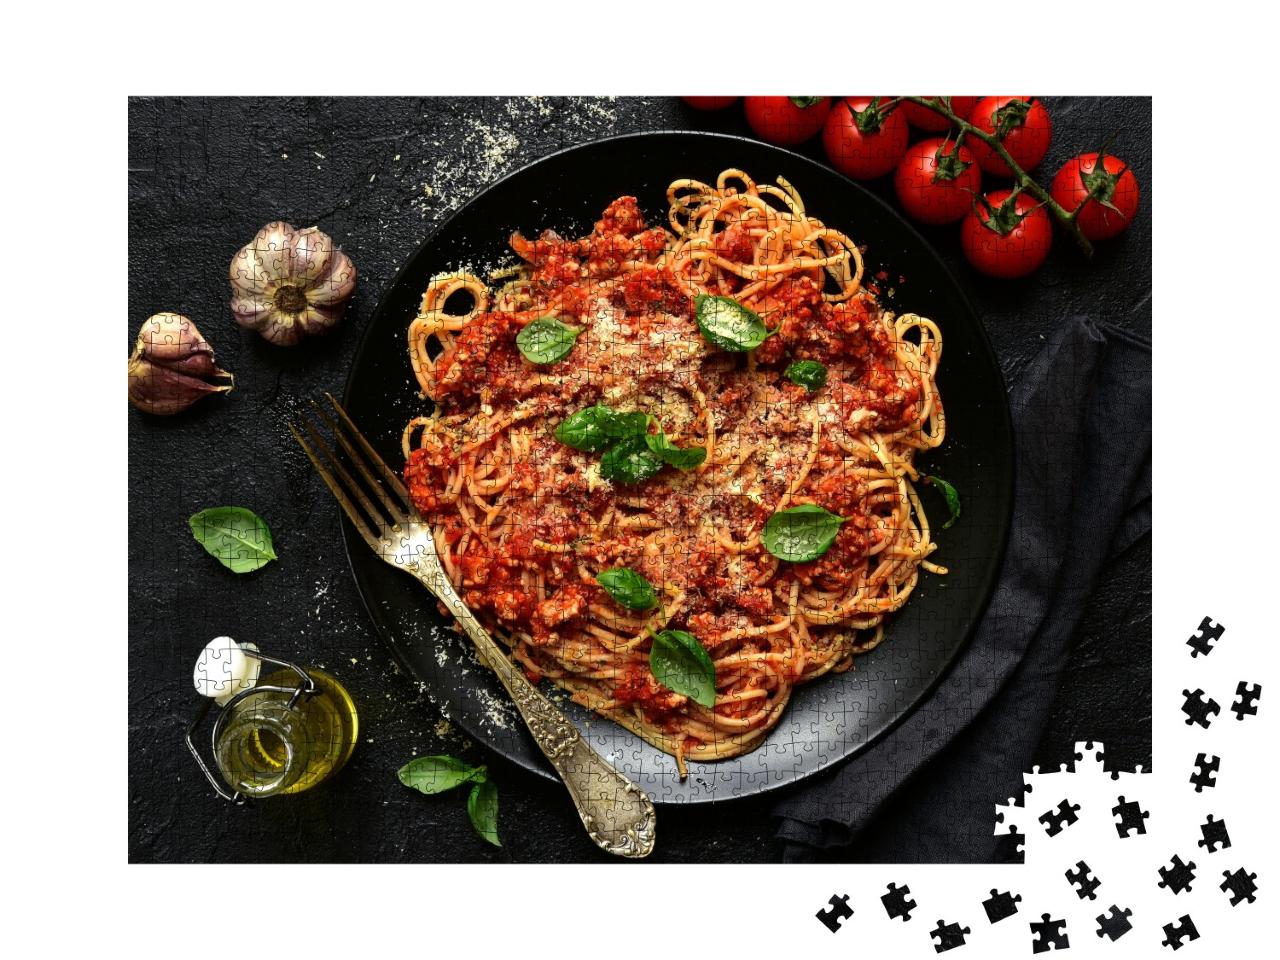 Puzzle de 1000 pièces « Spaghetti bolognaise italienne traditionnelle »